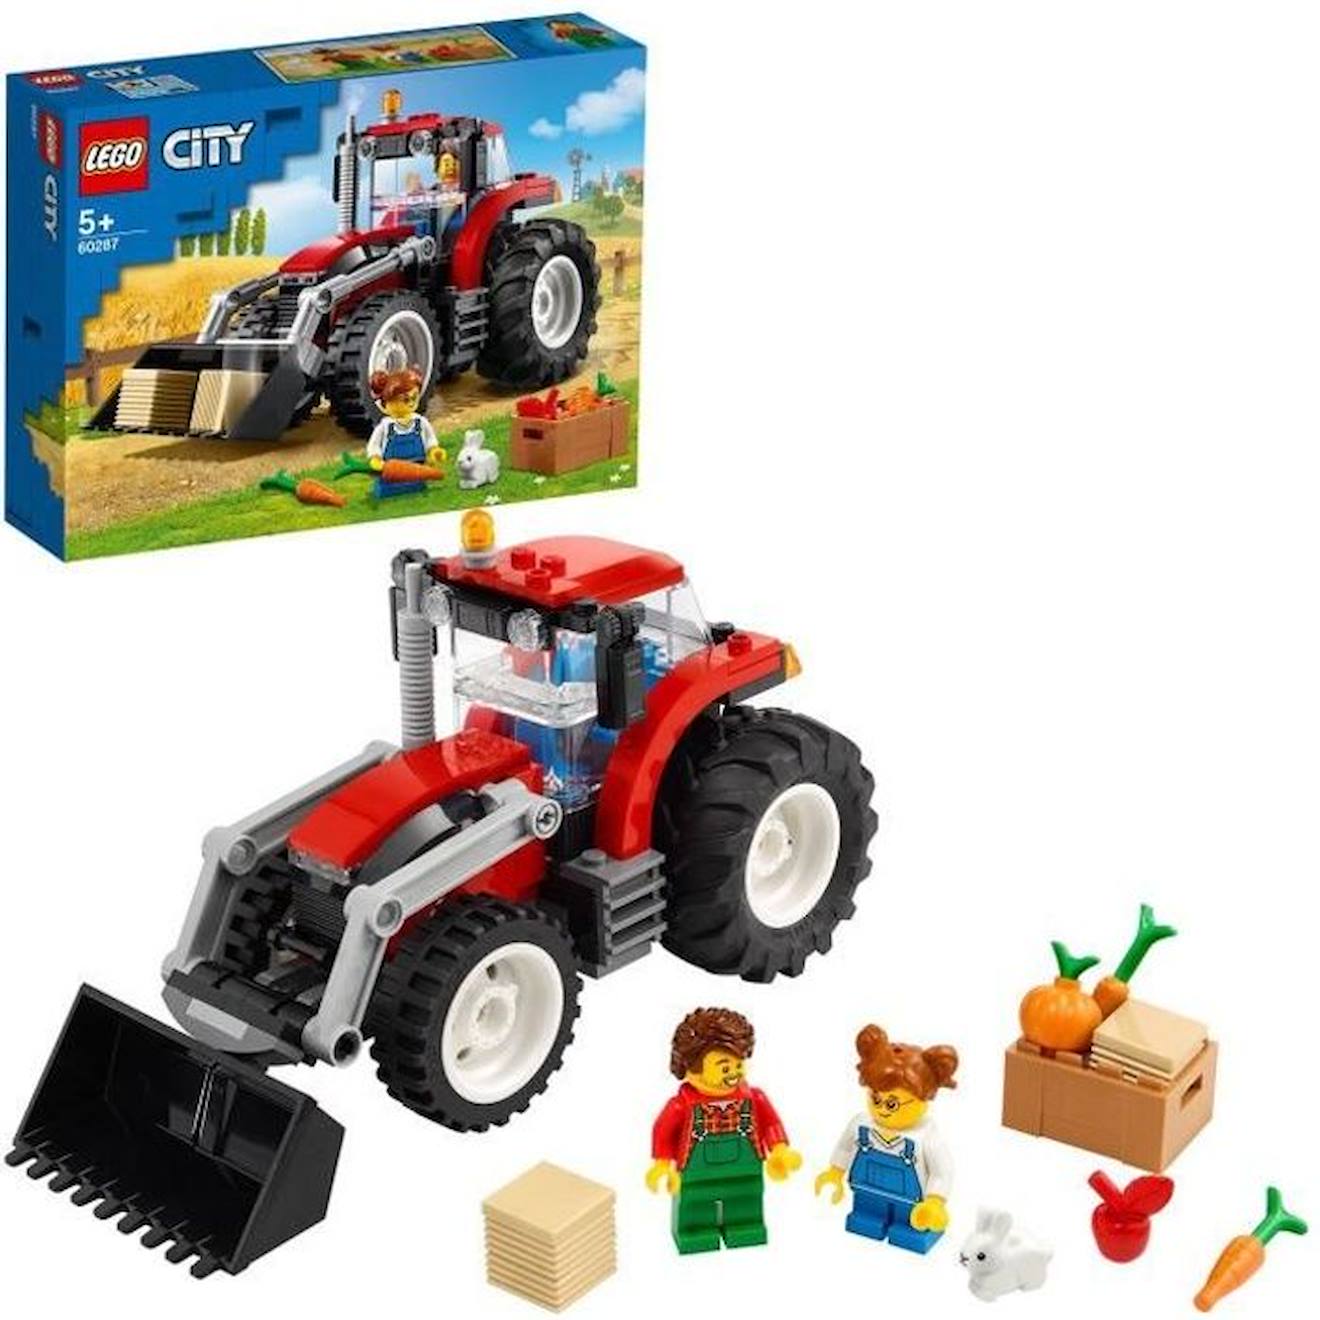 Lego® City 60287 Le Tracteur, Jouet De Construction, Animaux De La Ferme, Figurine De Lapin Rouge